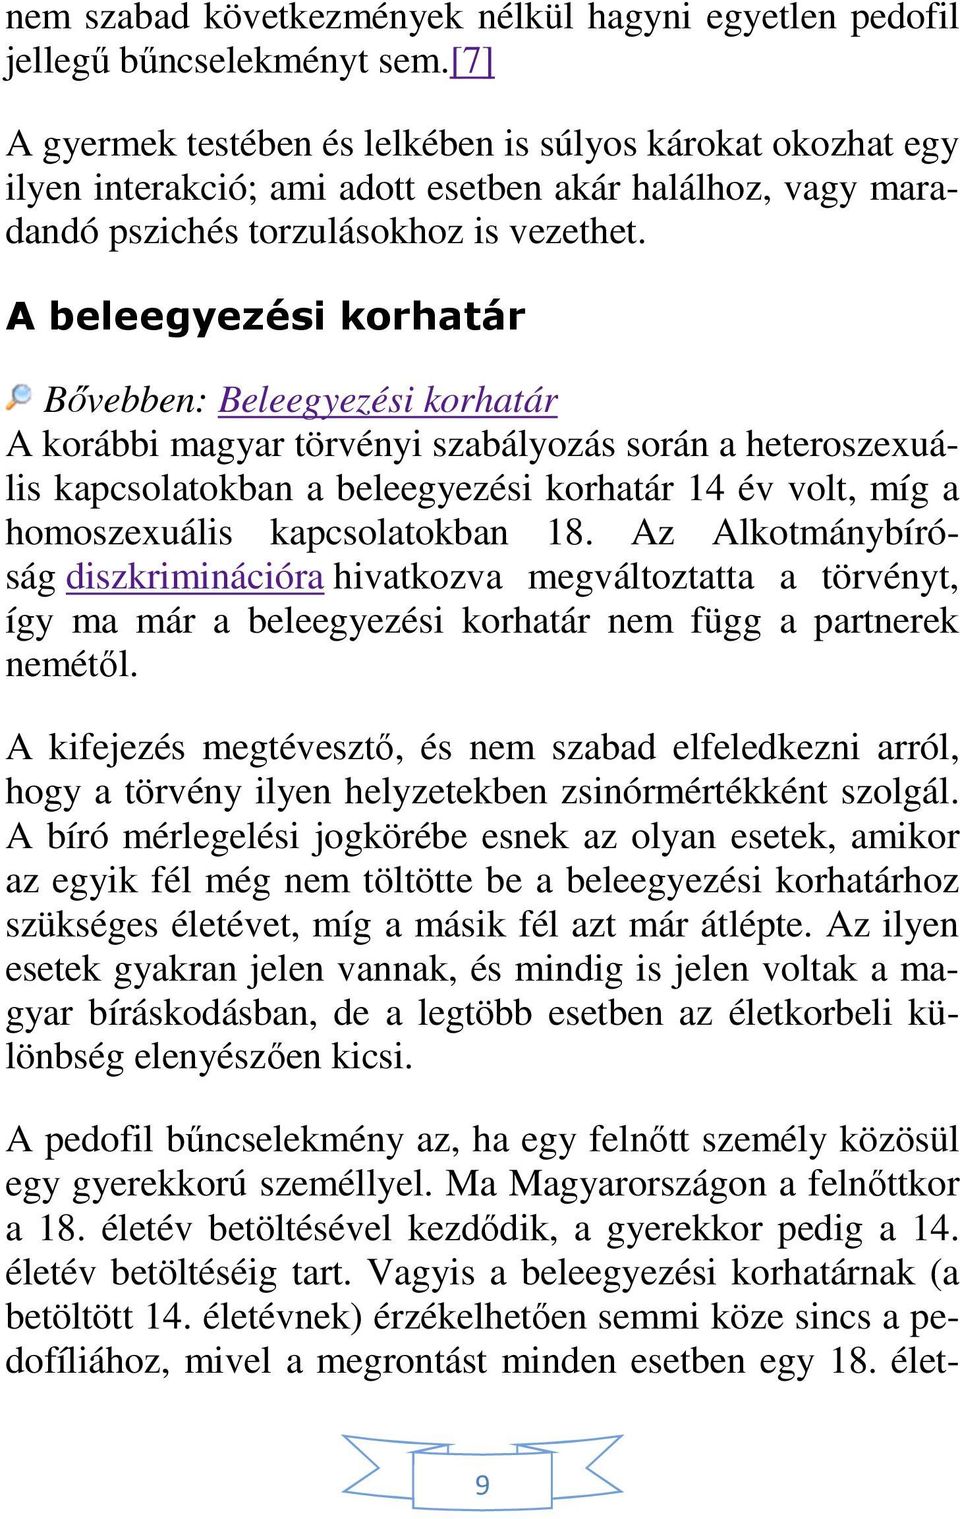 A beleegyezési korhatár Bővebben: Beleegyezési korhatár A korábbi magyar törvényi szabályozás során a heteroszexuális kapcsolatokban a beleegyezési korhatár 14 év volt, míg a homoszexuális